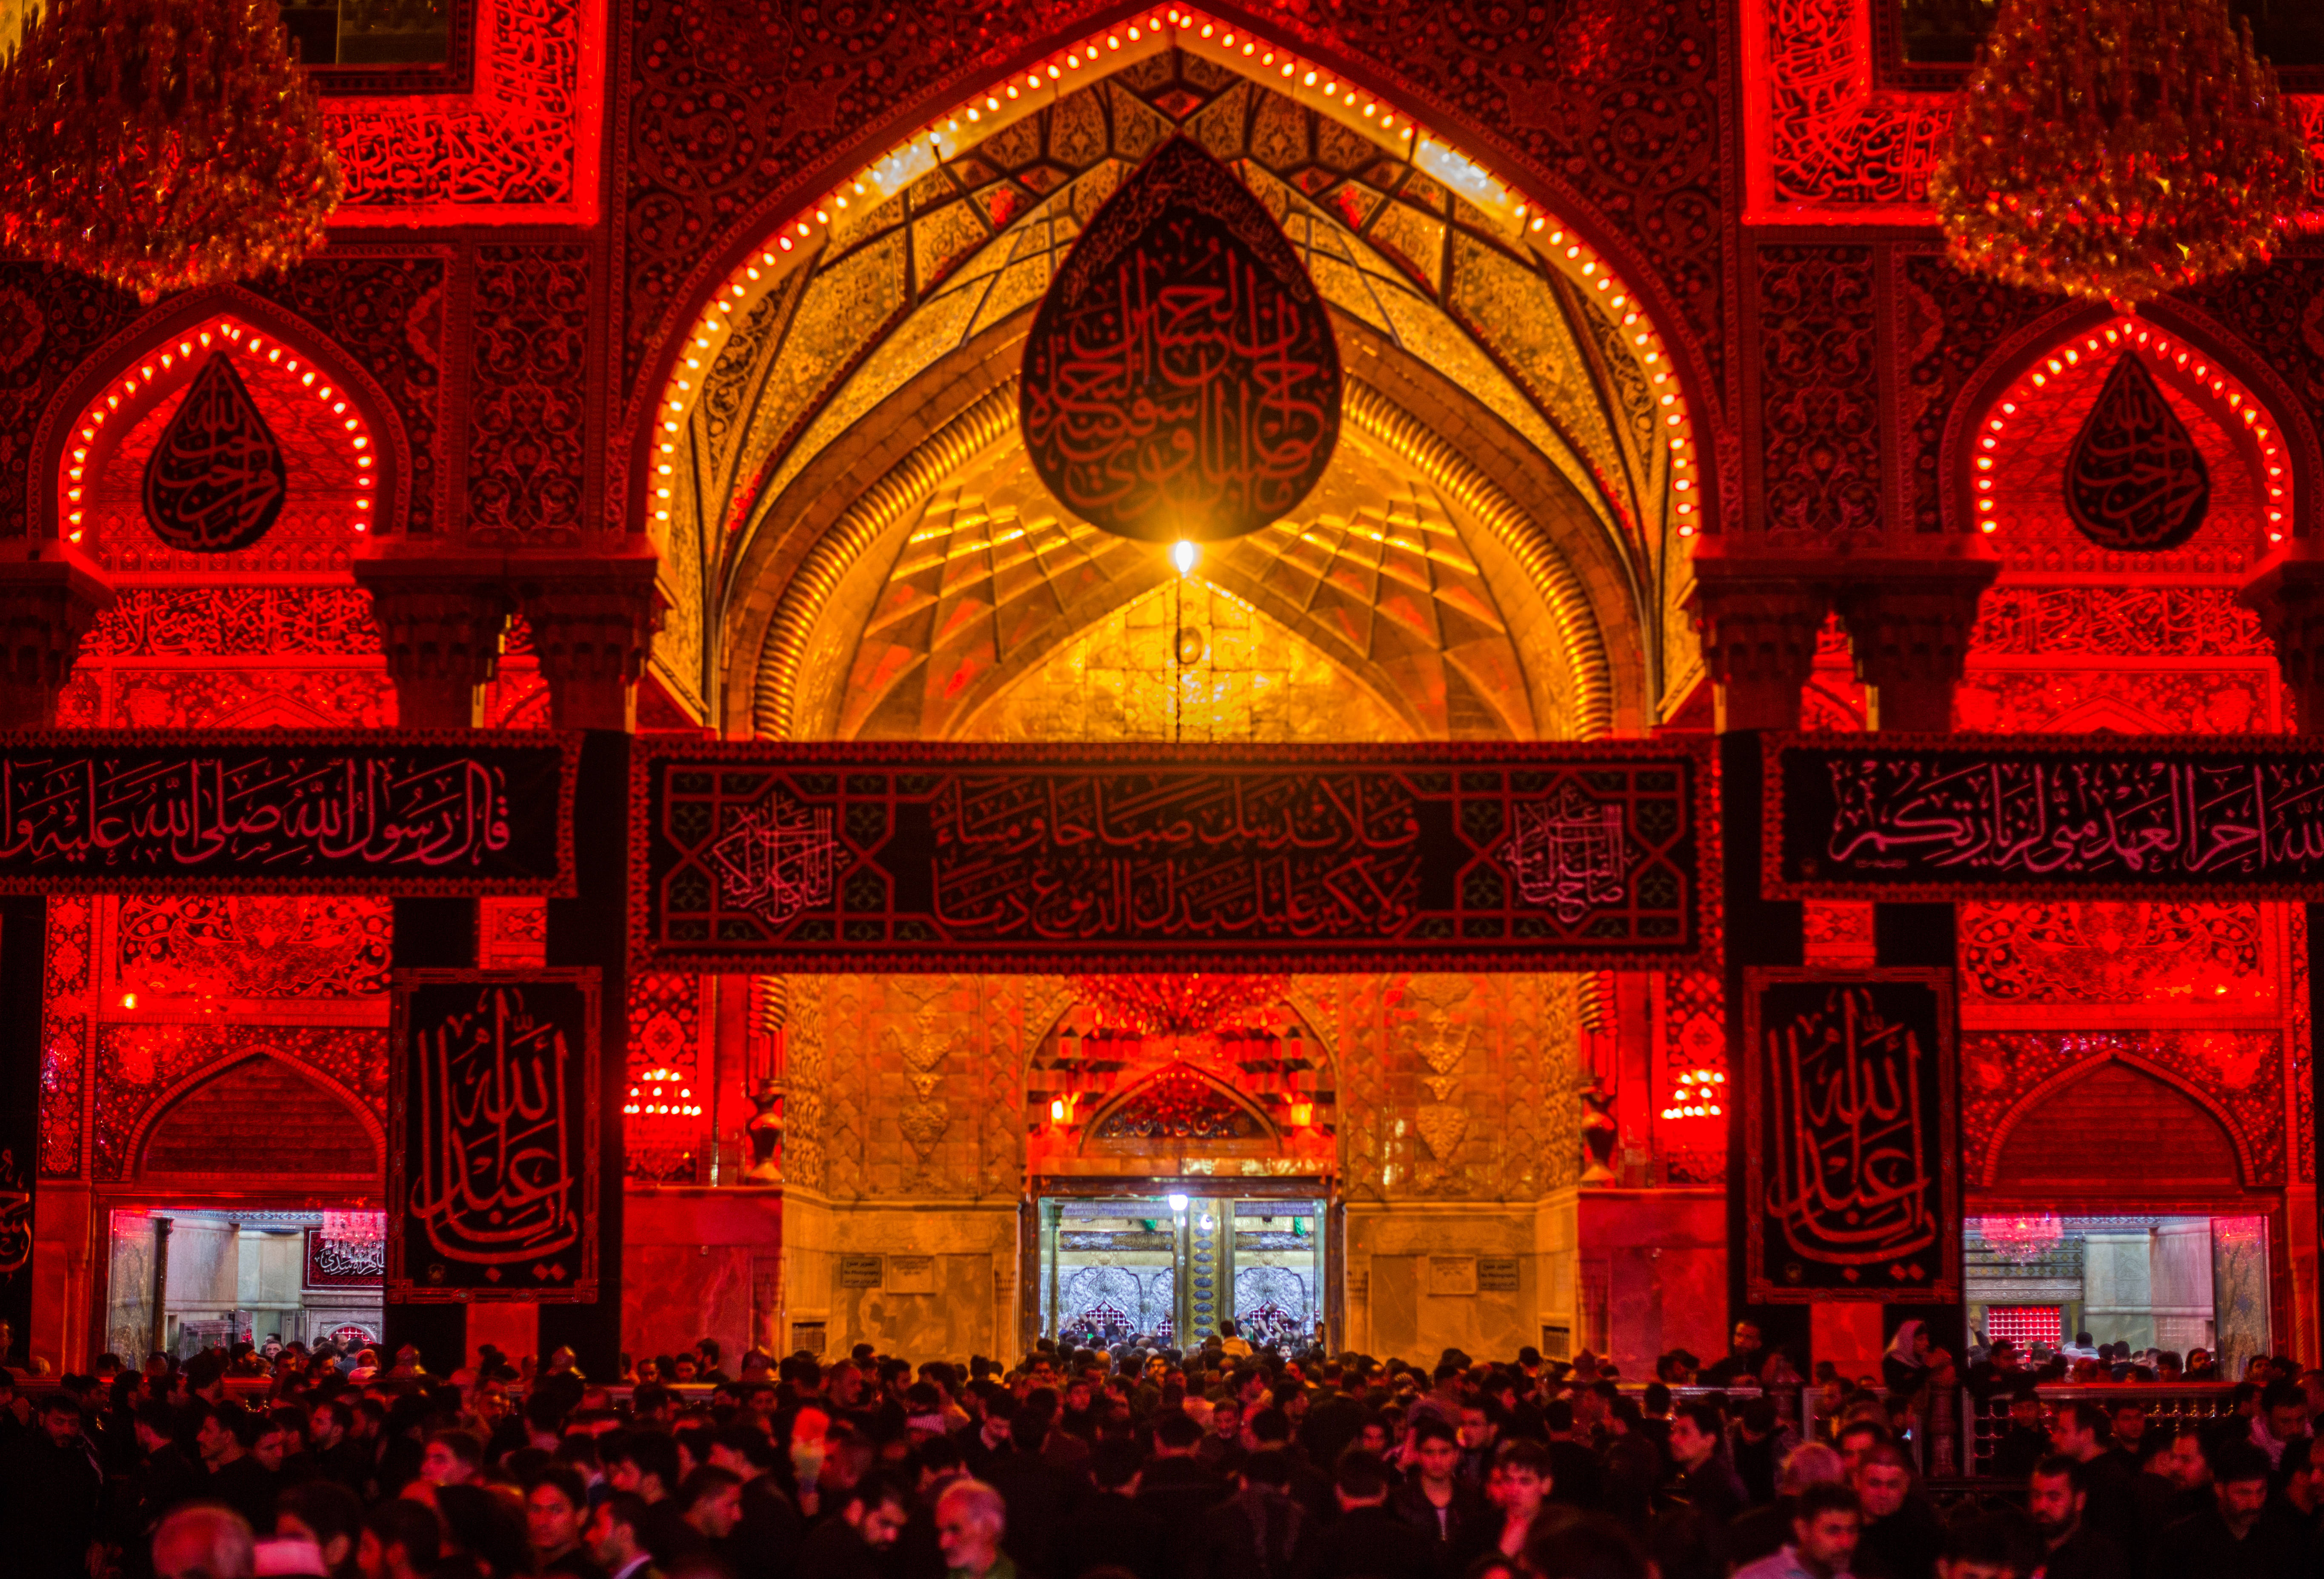 Shia là một trong những tín đồ tôn giáo lớn nhất thế giới và người theo đạo này thường hành hương tới những địa điểm linh thiêng. Hãy xem ảnh về Shia pilgrims để cảm nhận được sự trang trọng của họ.